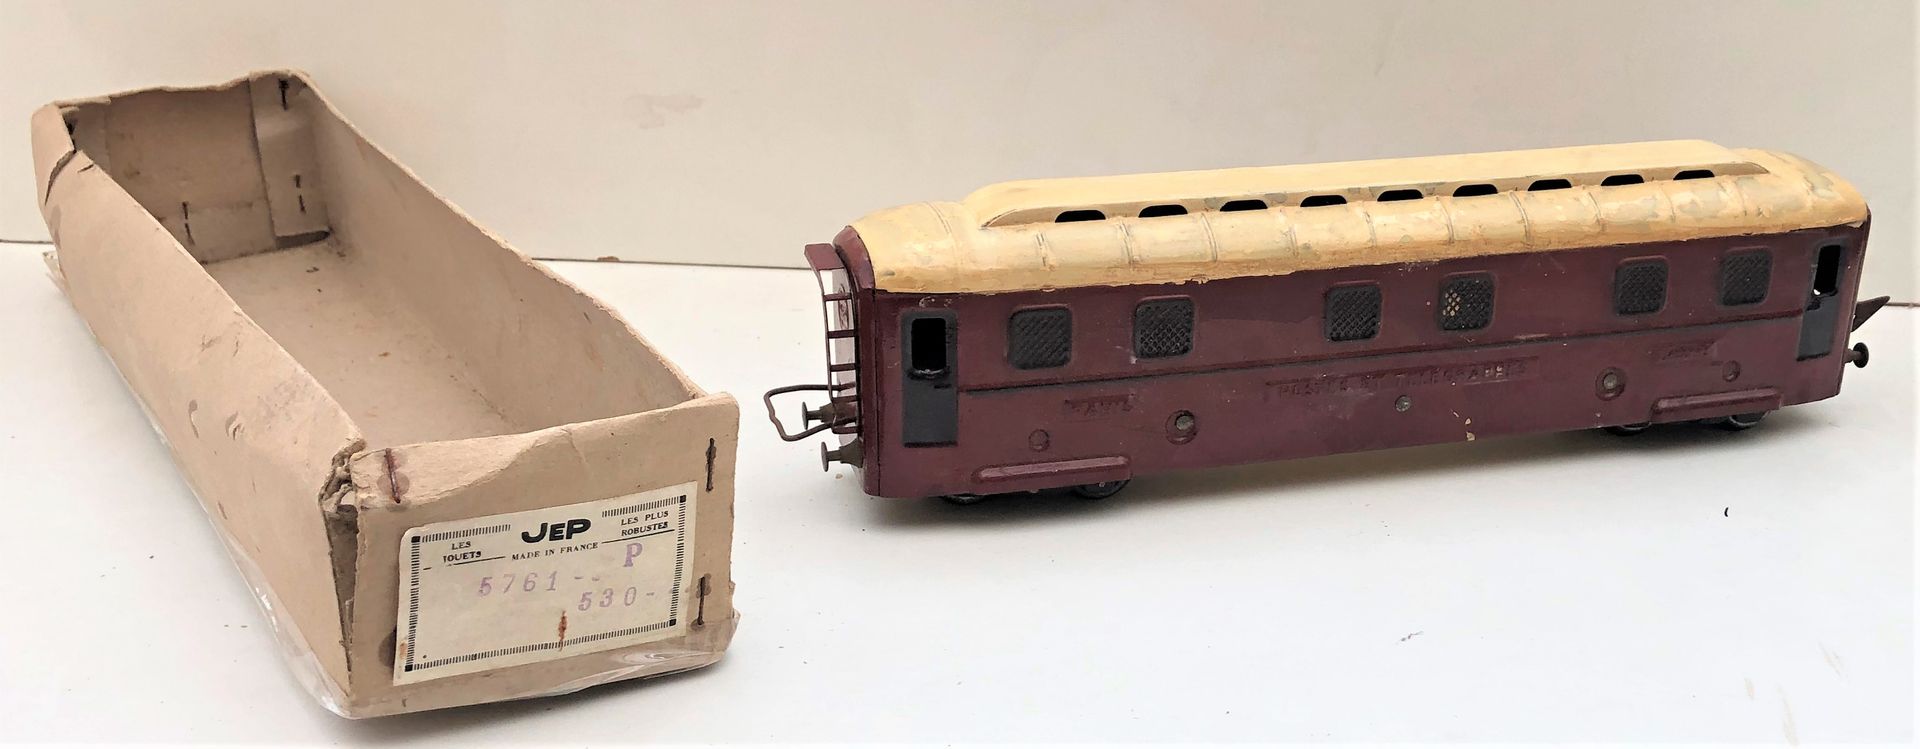 TRAINS JEP : Wagon Postes et Télégraphes PARIS Lettres 状况一般 - 盒子的盖子不见了